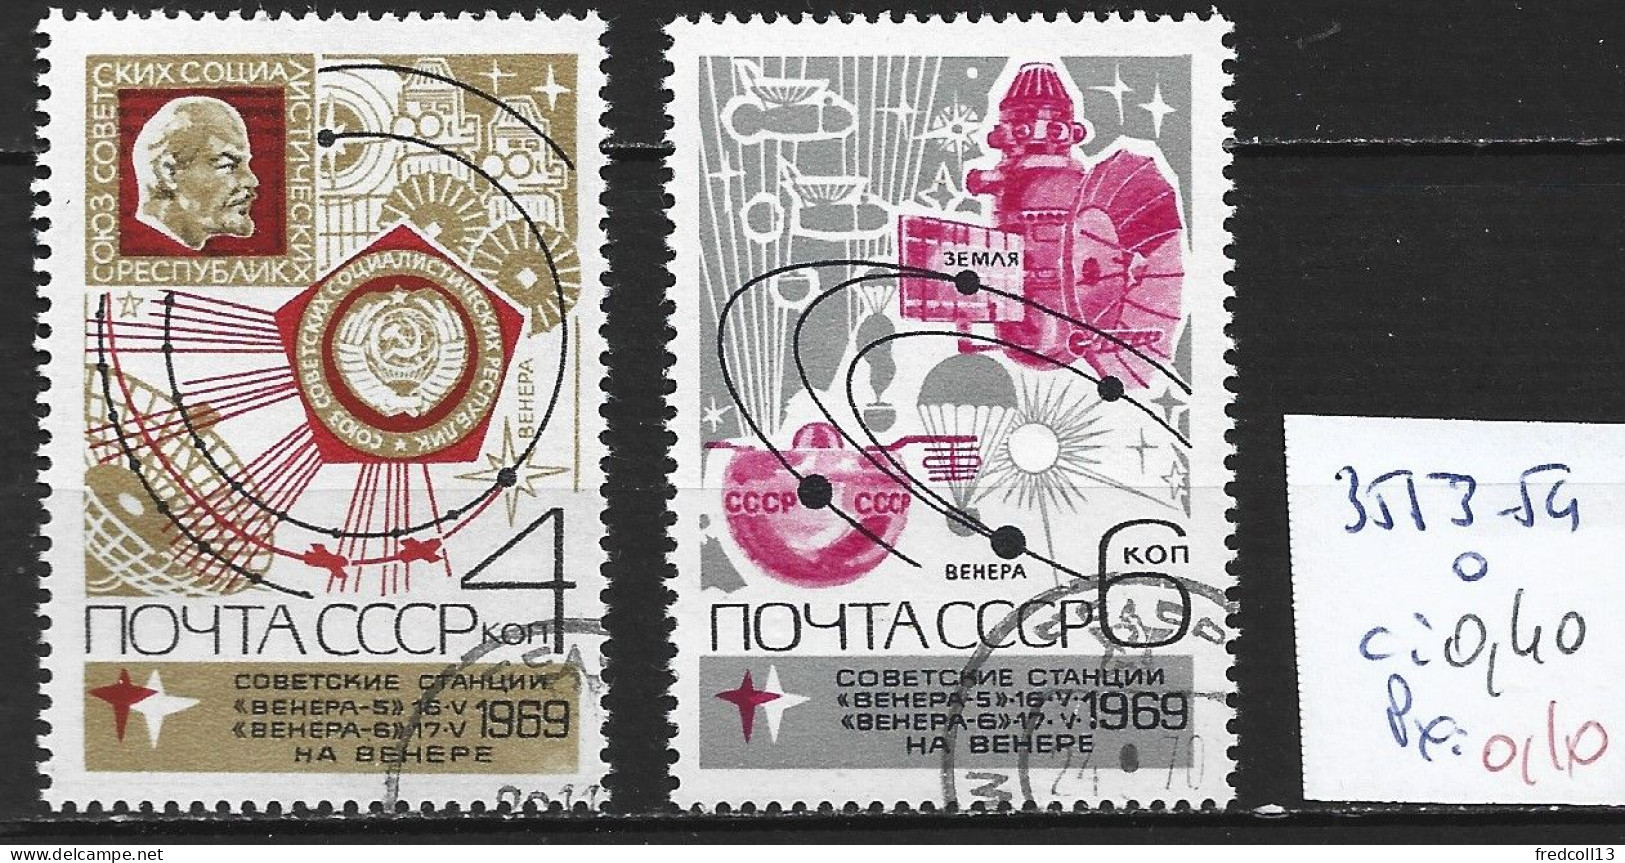 RUSSIE 3553-54 Oblitérés Côte 0.40 € - Used Stamps